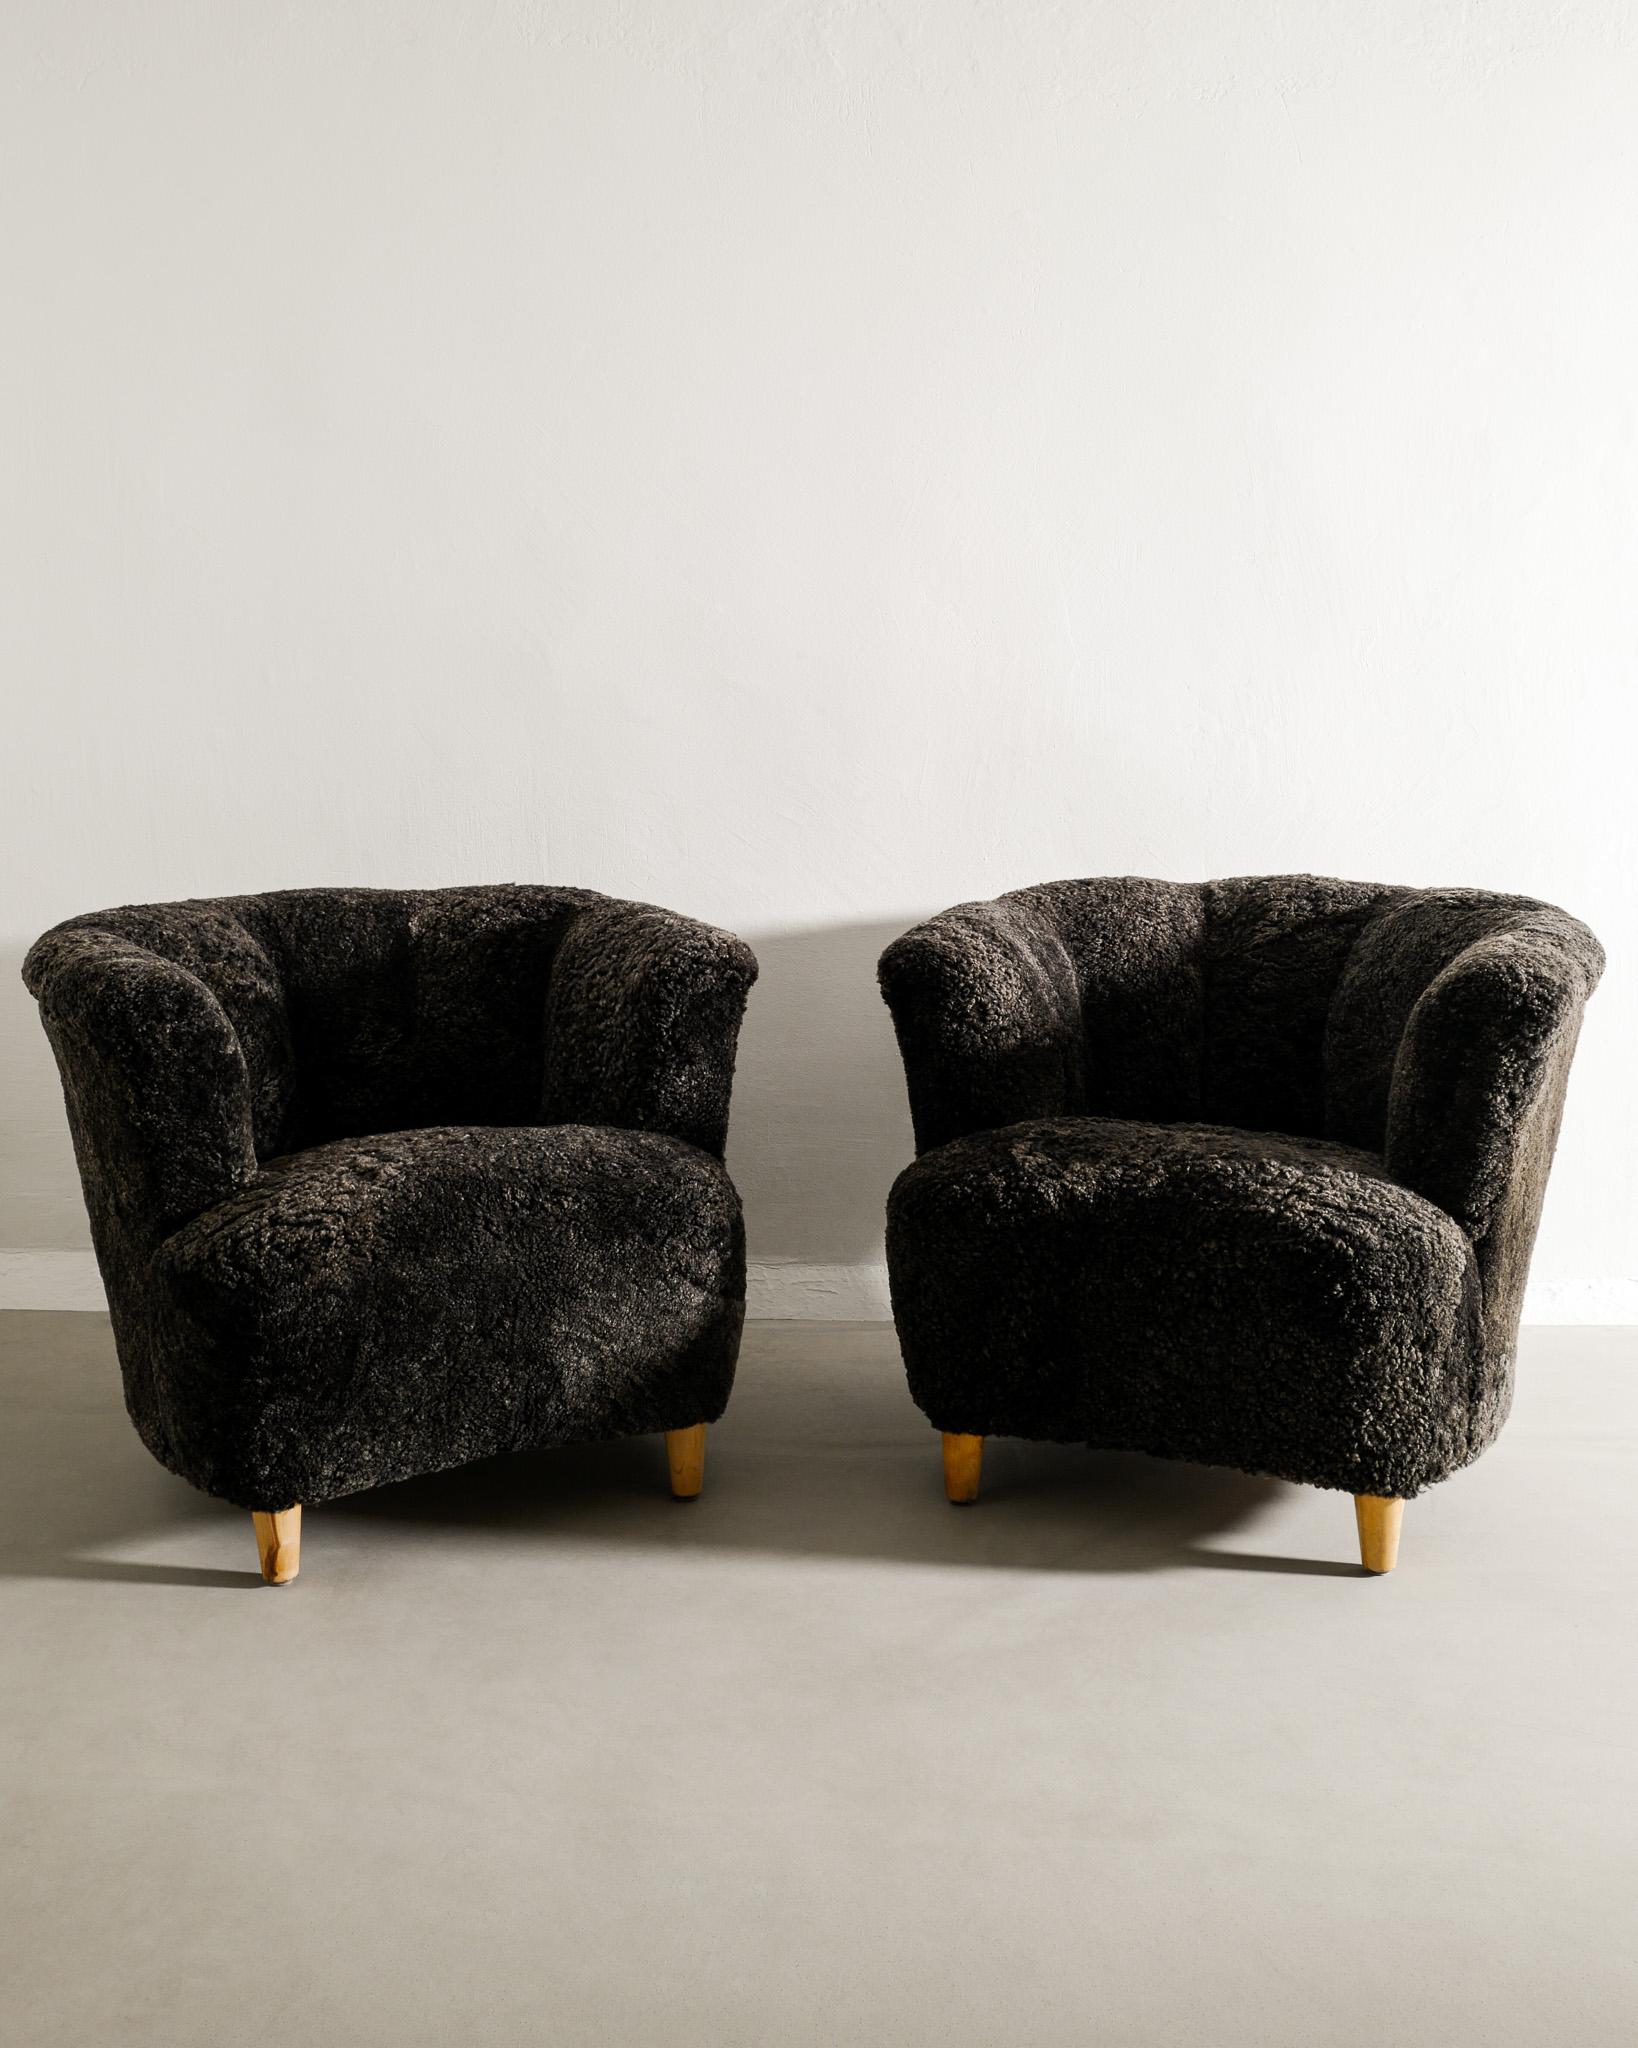 Seltenes Paar geschwungener moderner schwedischer Sessel im Stil von Otto Schultz, hergestellt in Schweden, 1940er Jahre. In gutem Zustand und neu restauriert und mit anthrazitfarbenem Schafsleder gepolstert. 

Abmessungen: H: 68 cm / 27